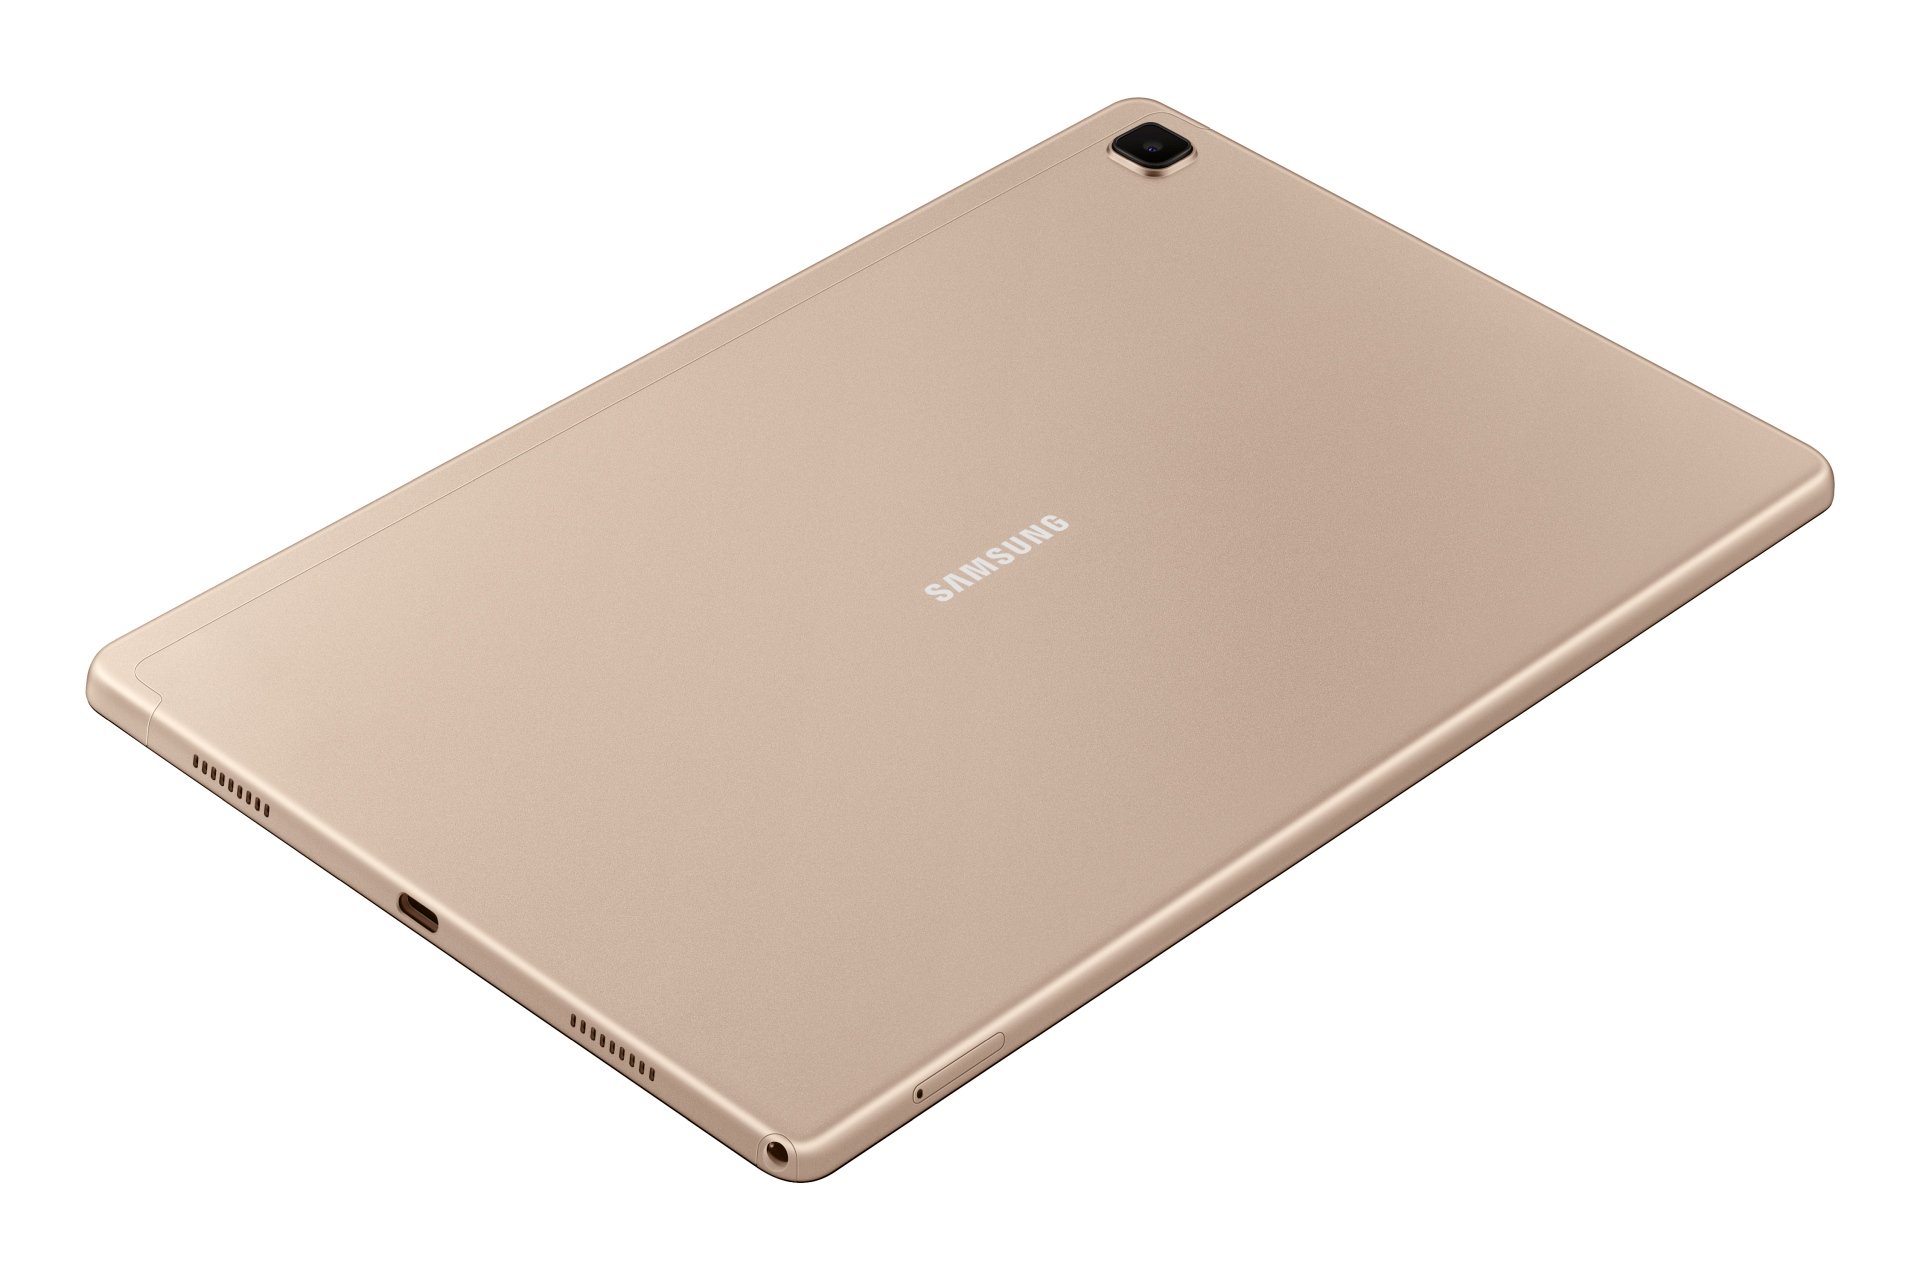 Samsung ra mắt Galaxy Tab A7 (2020): Màn hình 10.4 inch, Snapdragon 662, 4 loa - Ảnh 2.